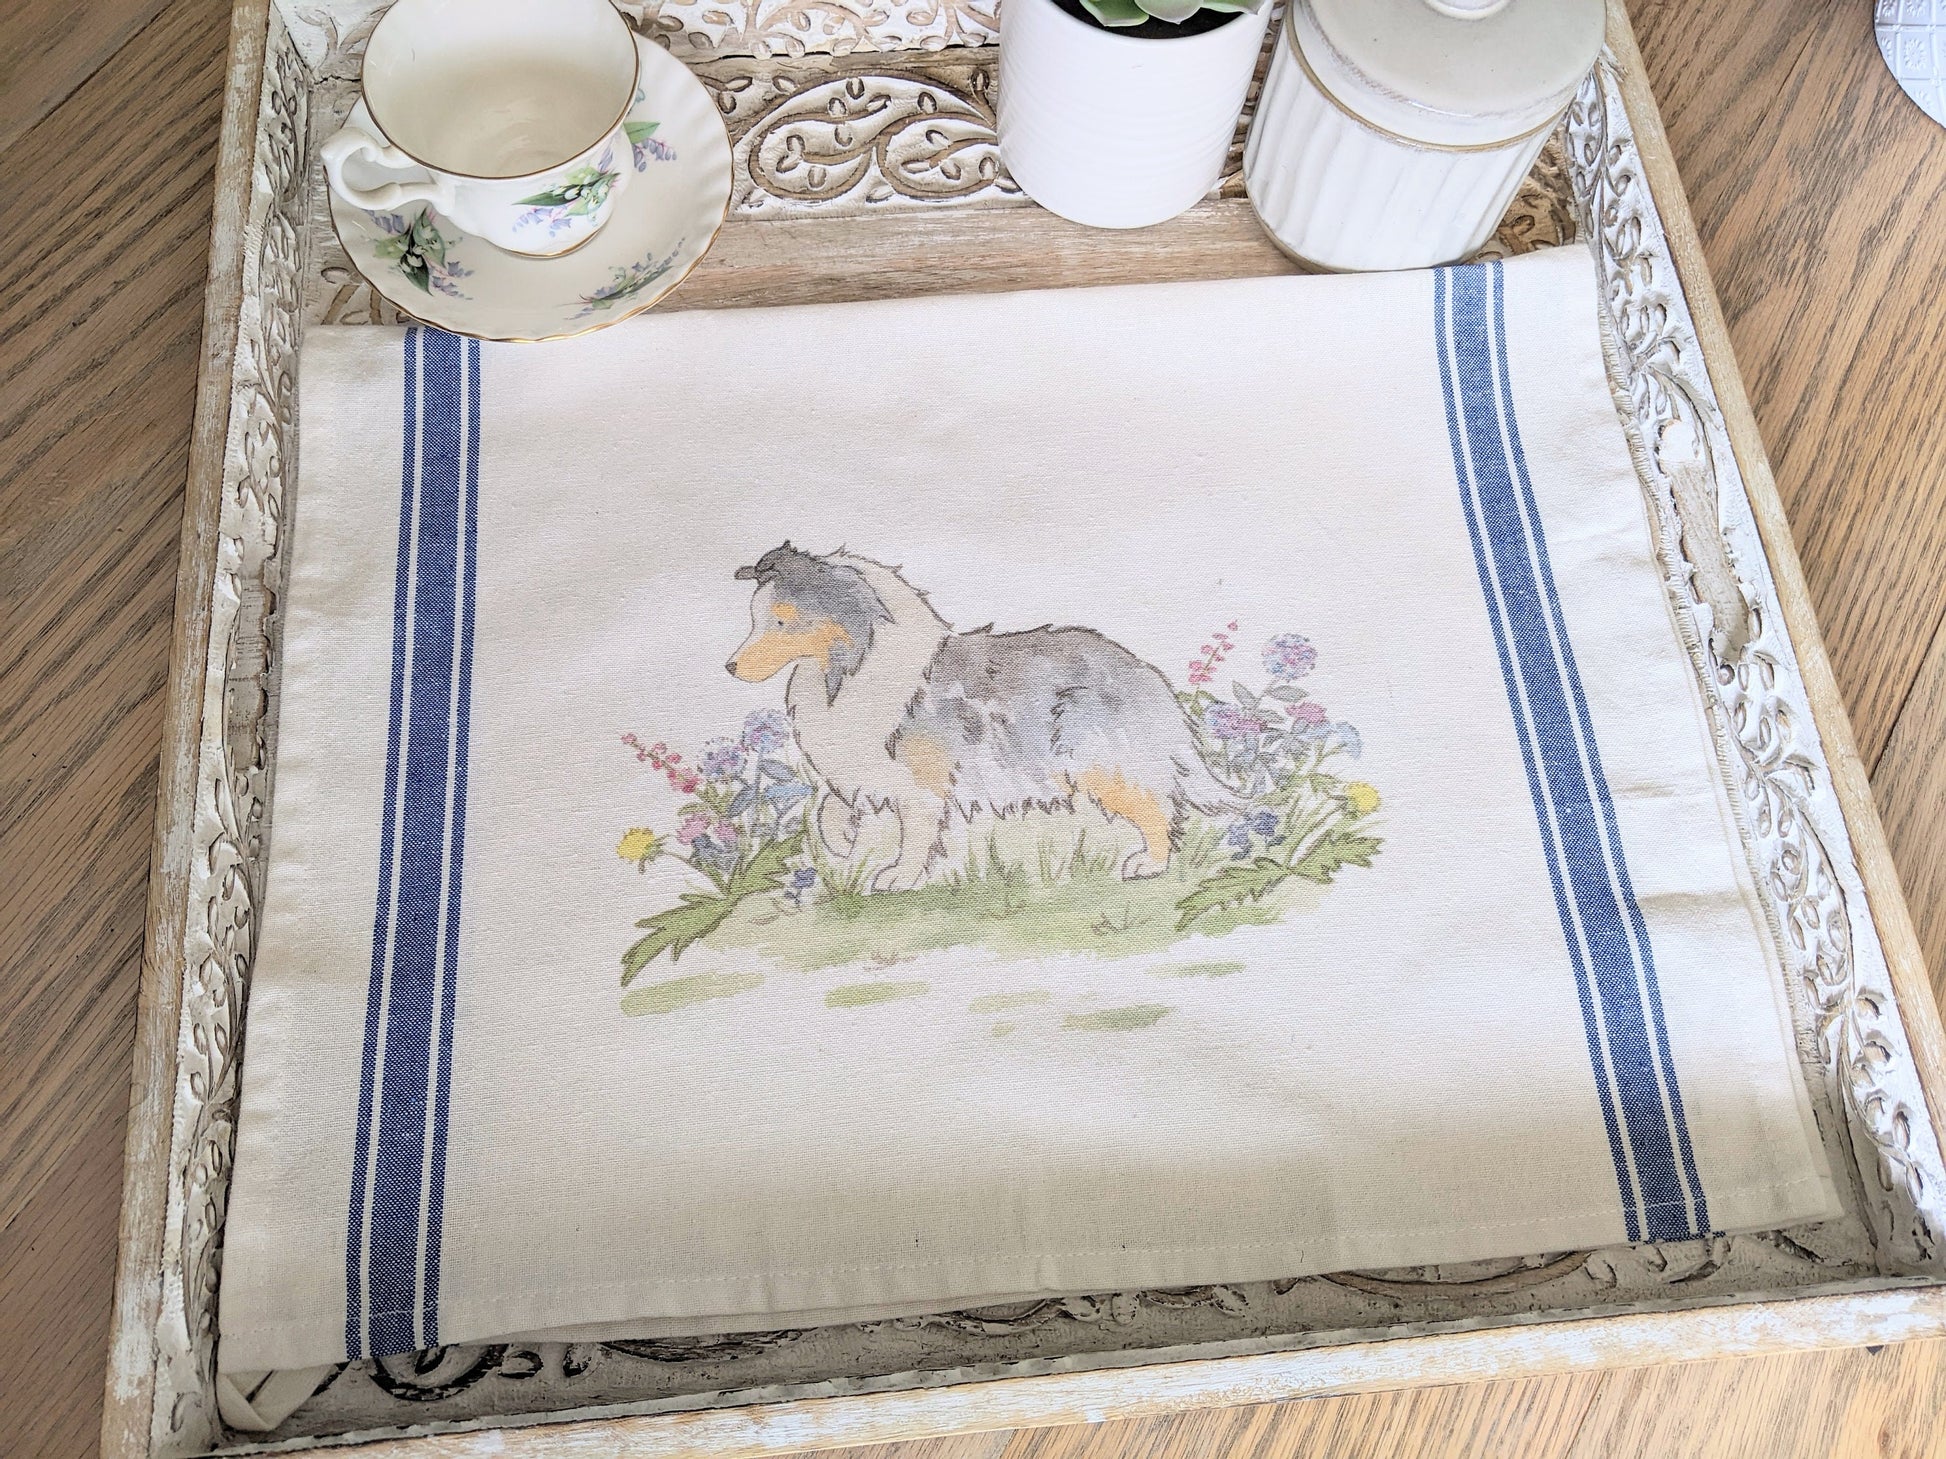 Shetland Sheepdog Tea Towel, Farmhouse Sheltie Towel, Ticking Stripe Towel, Blue Merle Sheltie Towel, Sheltie Gift, Gift for Sheltie Lovers